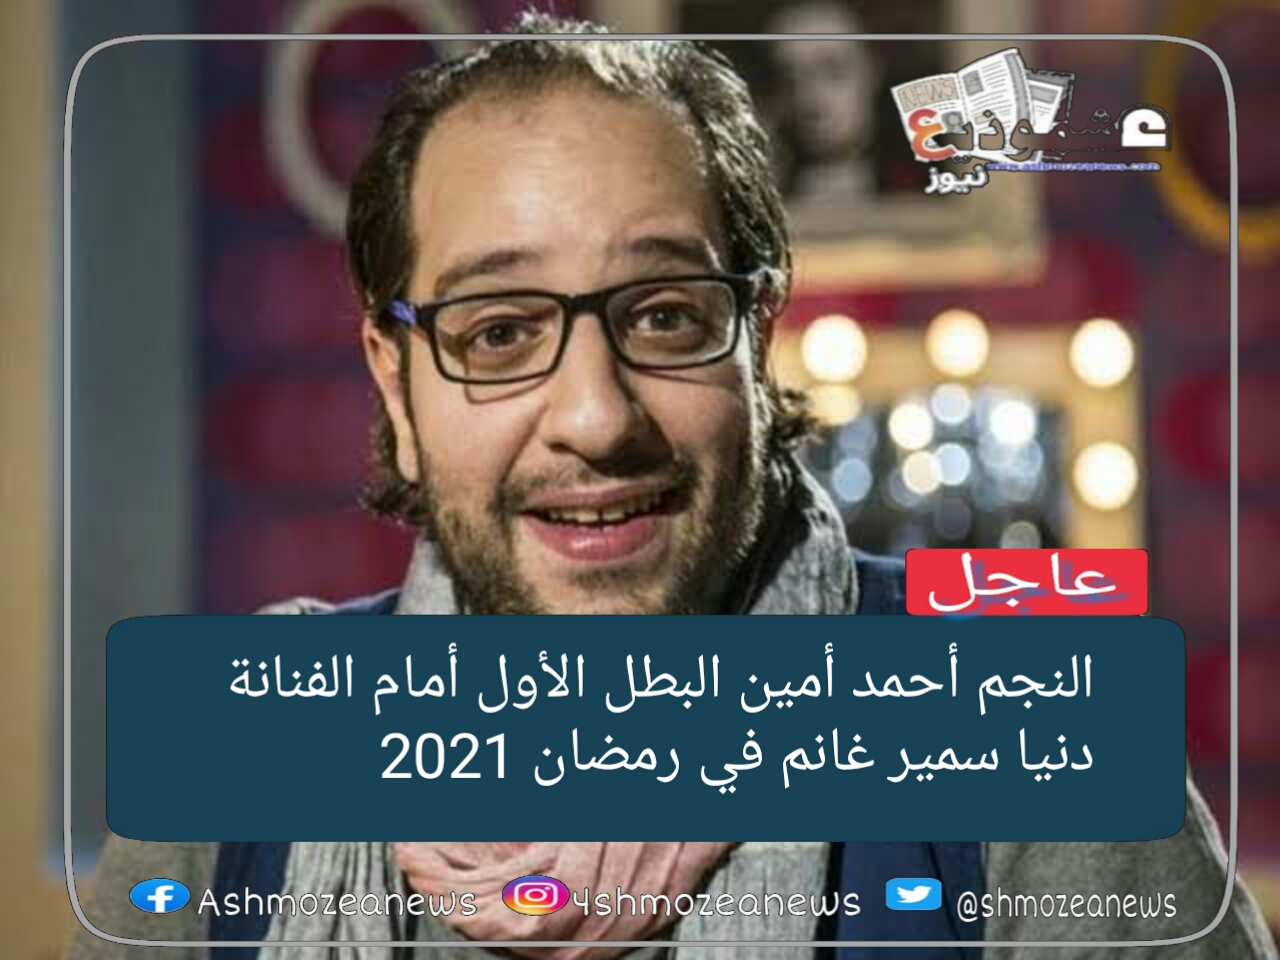 النجم أحمد أمين البطل الأول أمام الفنانة دنيا سمير غانم في رمضان 2021